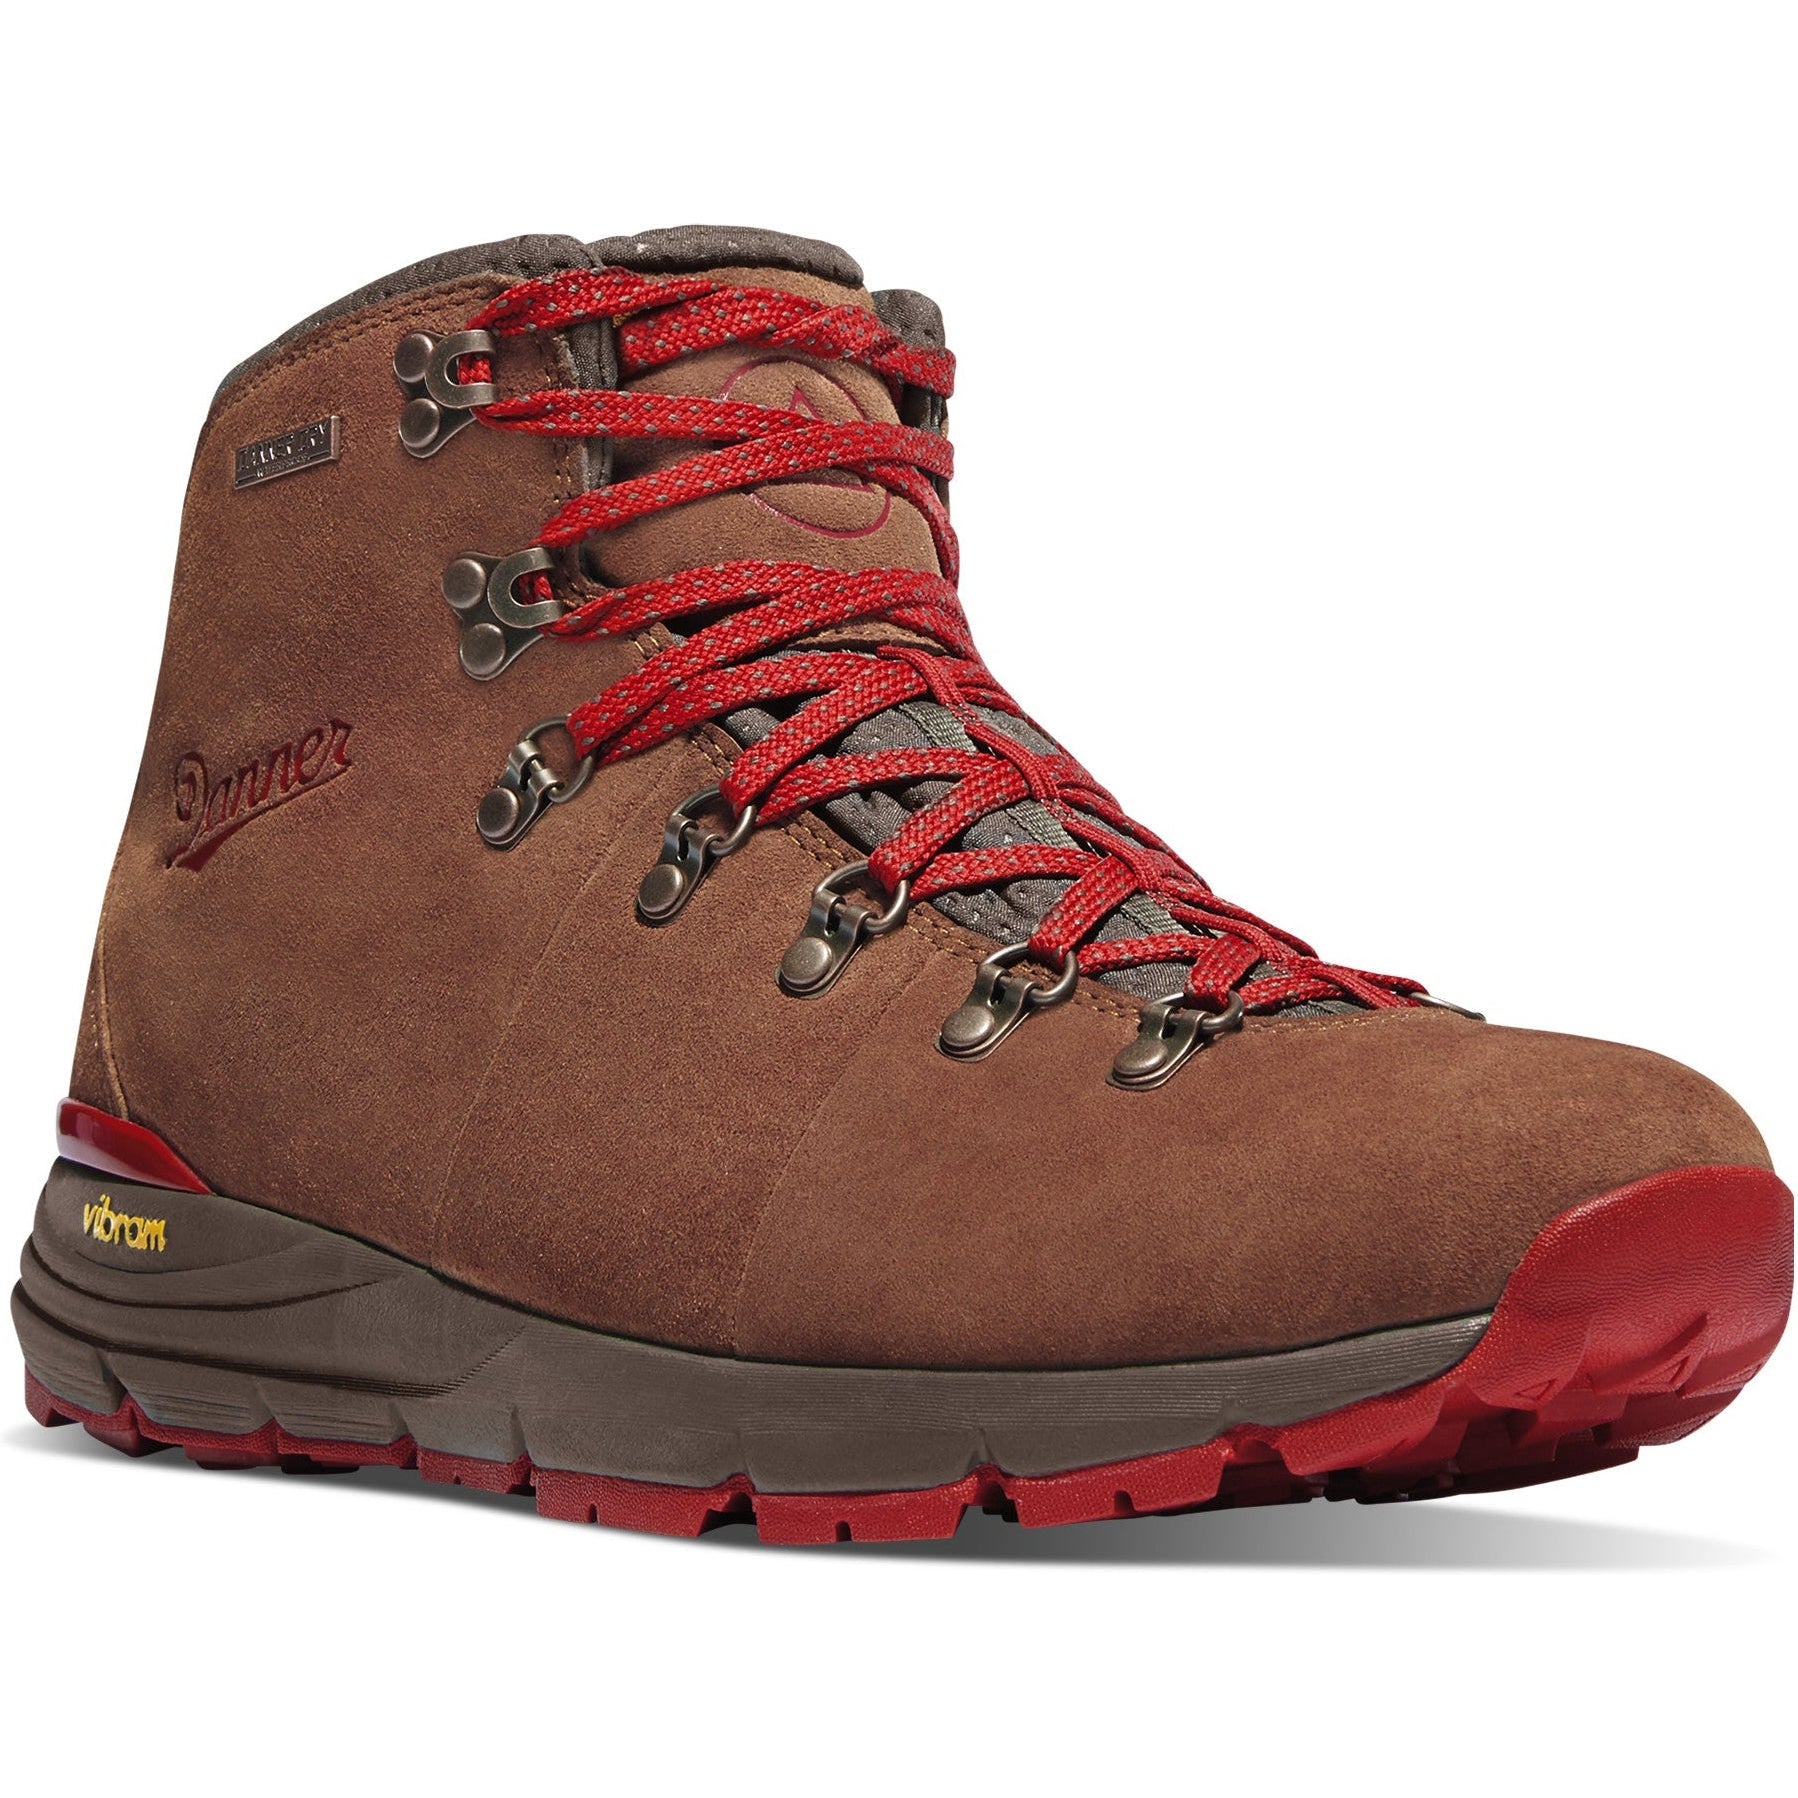 Danner Men's Mountain 600 4.5" WP Hiking Boot - Brown - 62241 7 / Medium / Brown - Overlook Boots